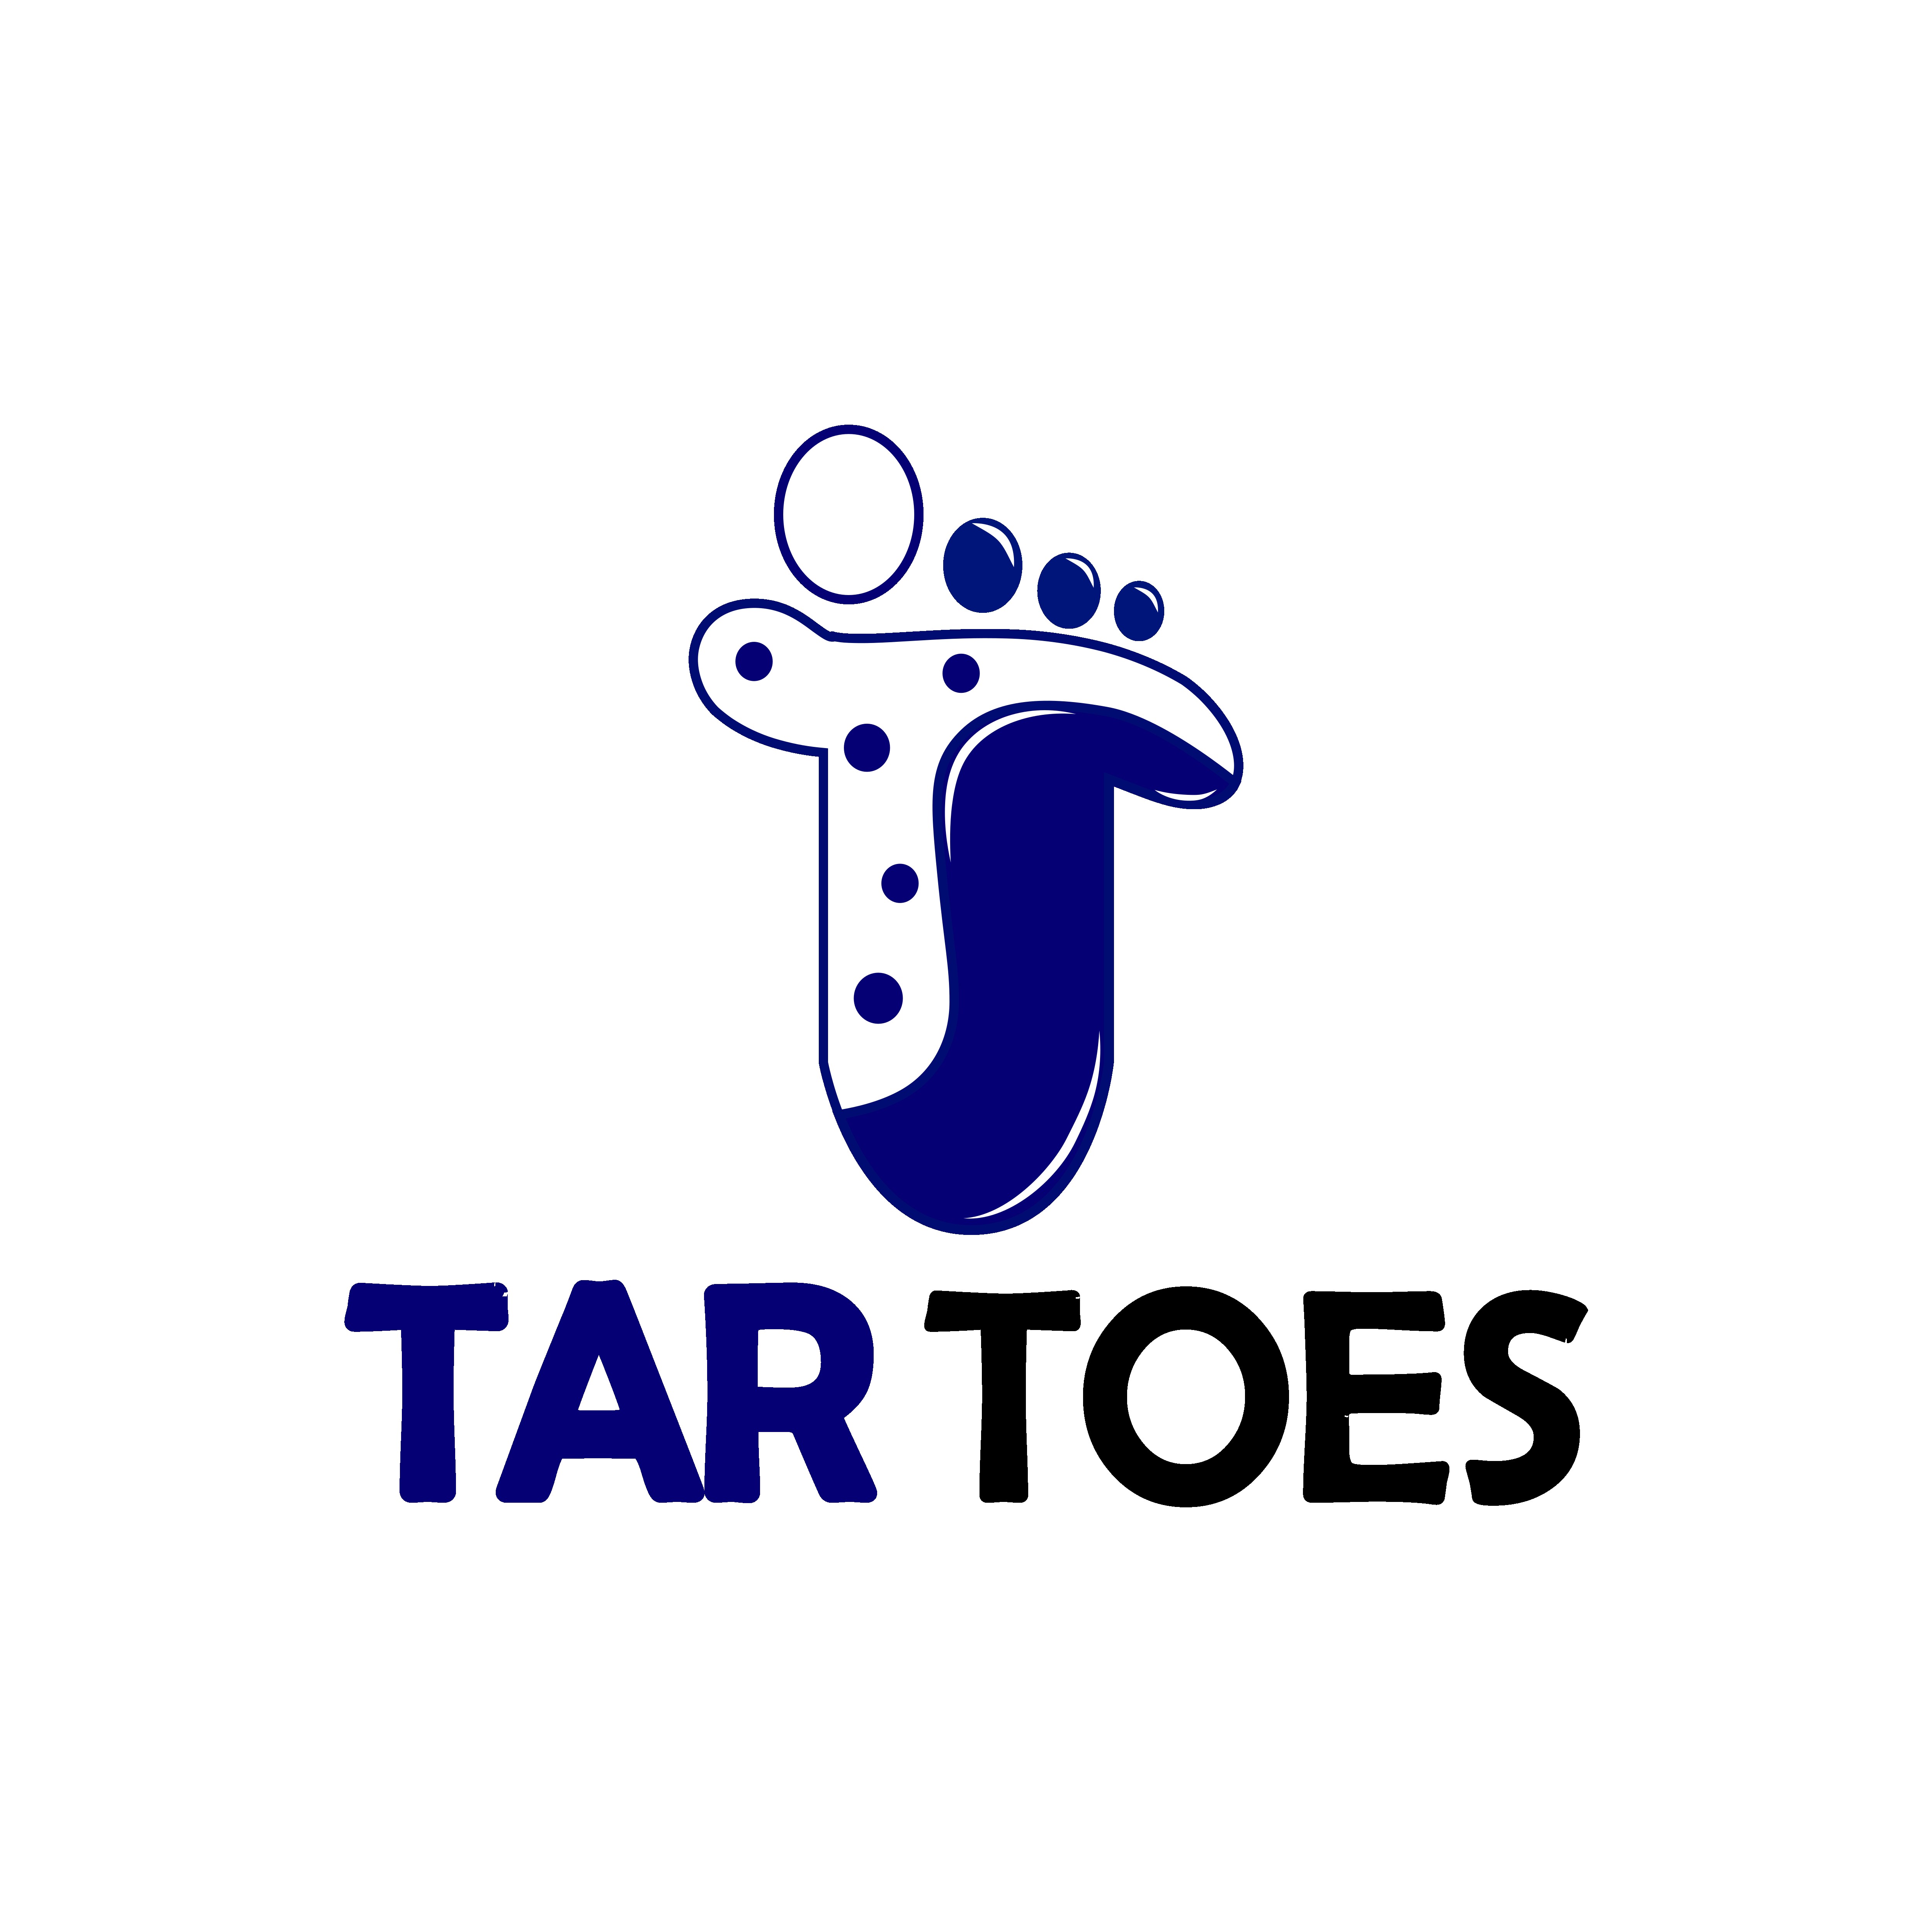 shoes company, socks company, tar toes company, toe logo preview image.